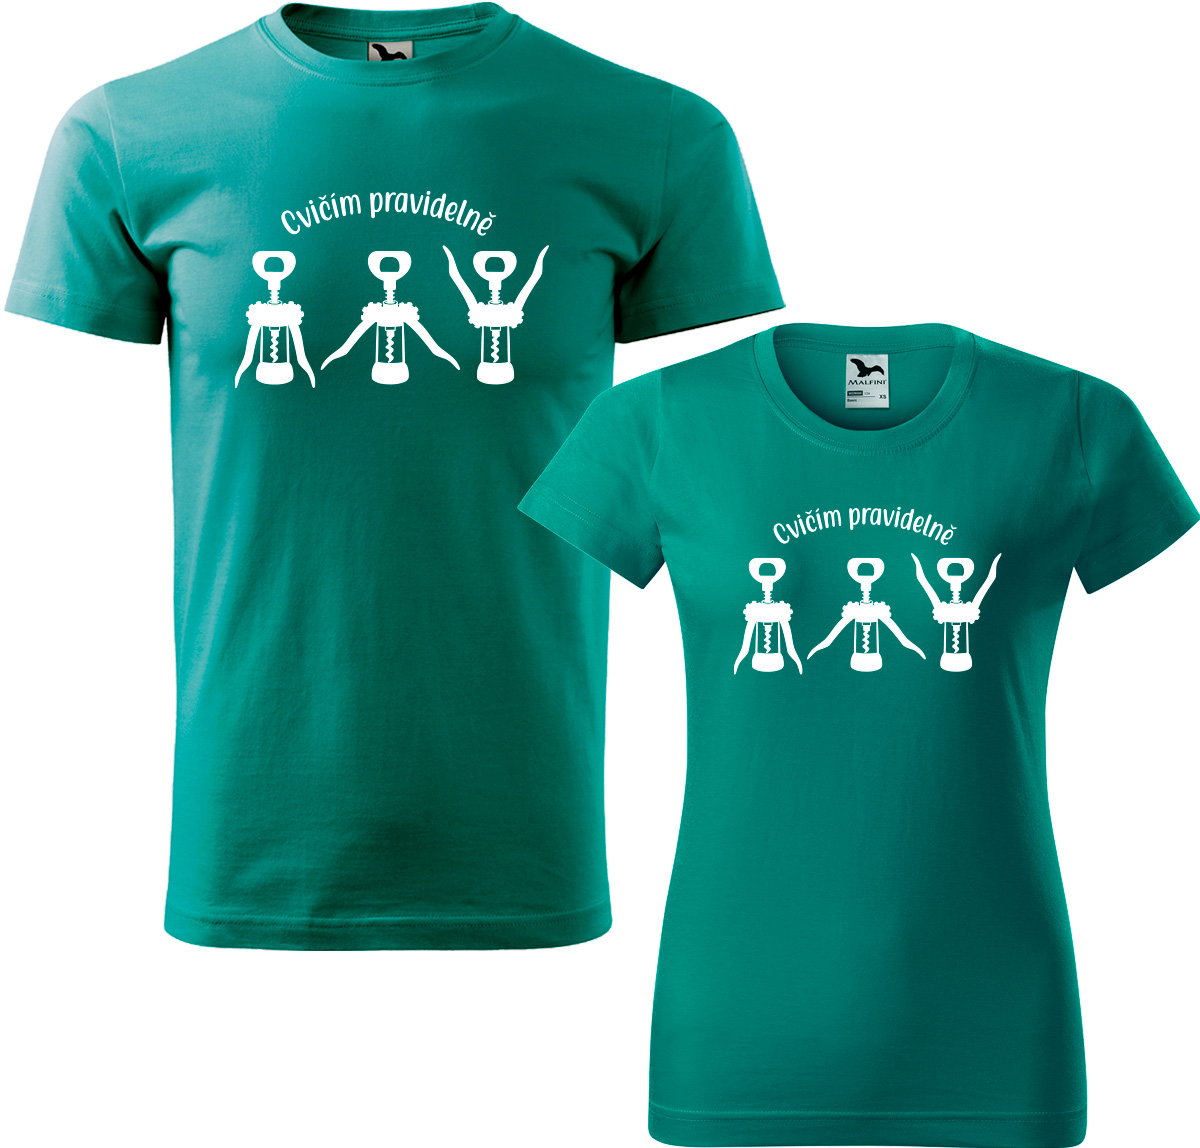 Trička pro páry - Cvičím pravidelně Barva: Emerald (19), Velikost dámské tričko: L, Velikost pánské tričko: L